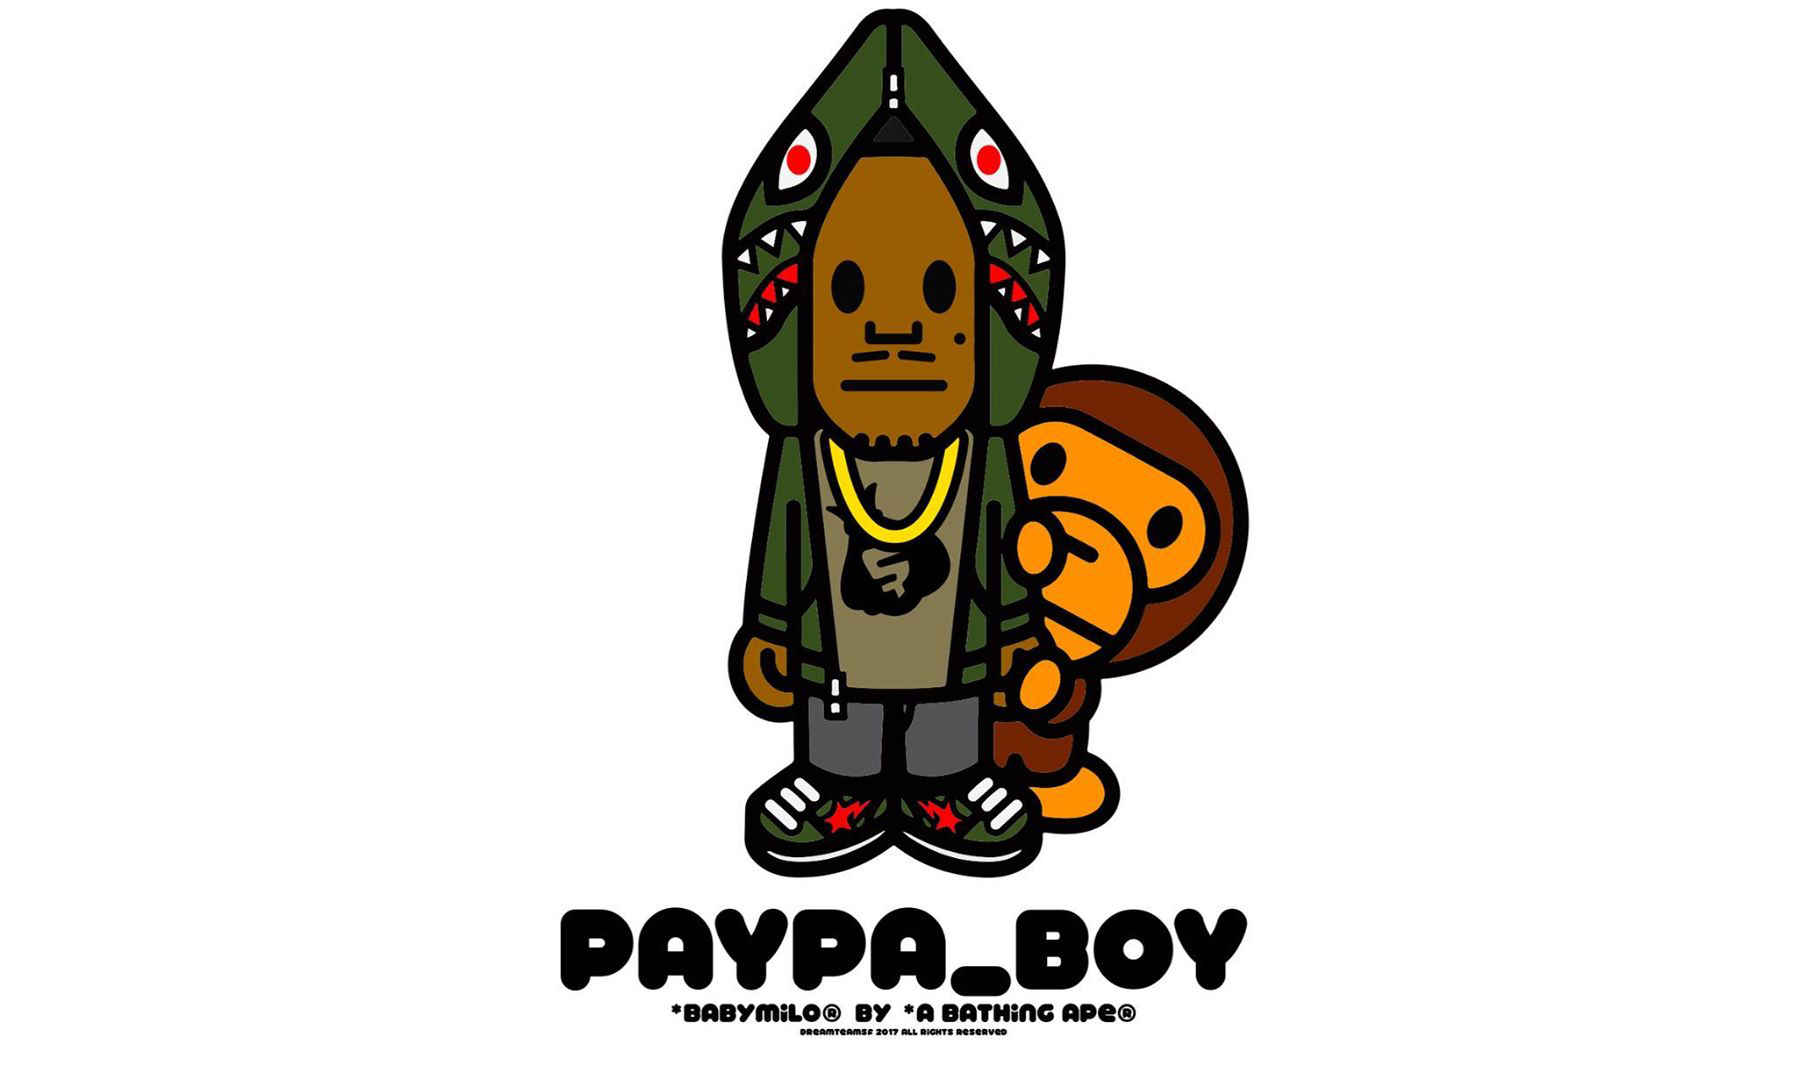 网络红人 Paypa_Boy 要与 BAPE® 官方推出合作了？